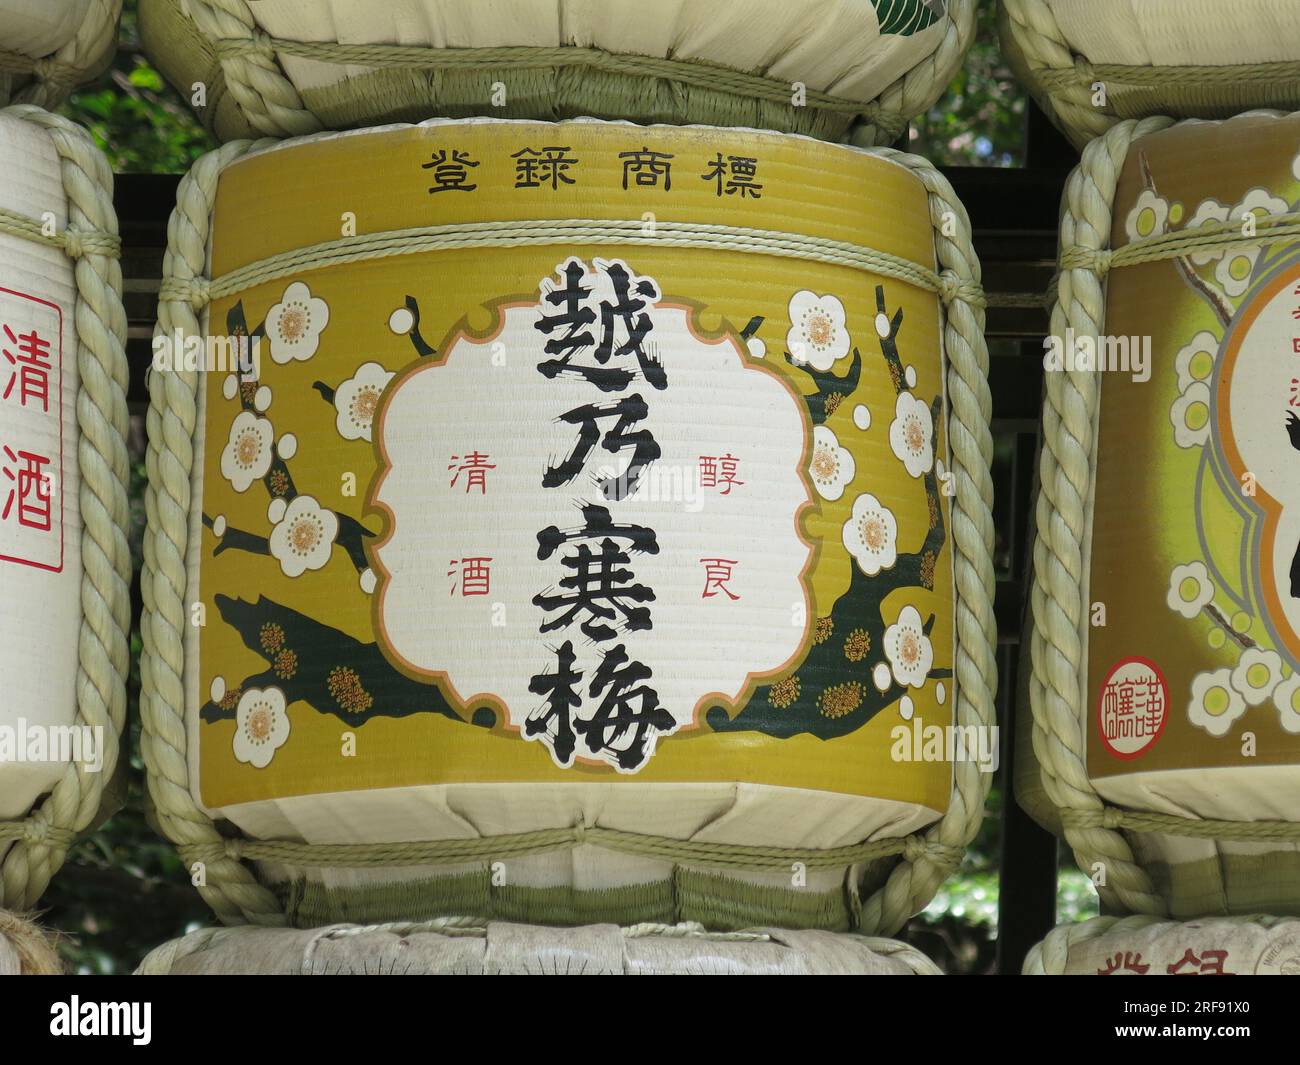 Cose che potresti vedere in Giappone: Primo piano di un barile di sake avvolto in paglia, un'offerta tradizionale per le anime dei defunti che sono tenute in grande considerazione. Foto Stock